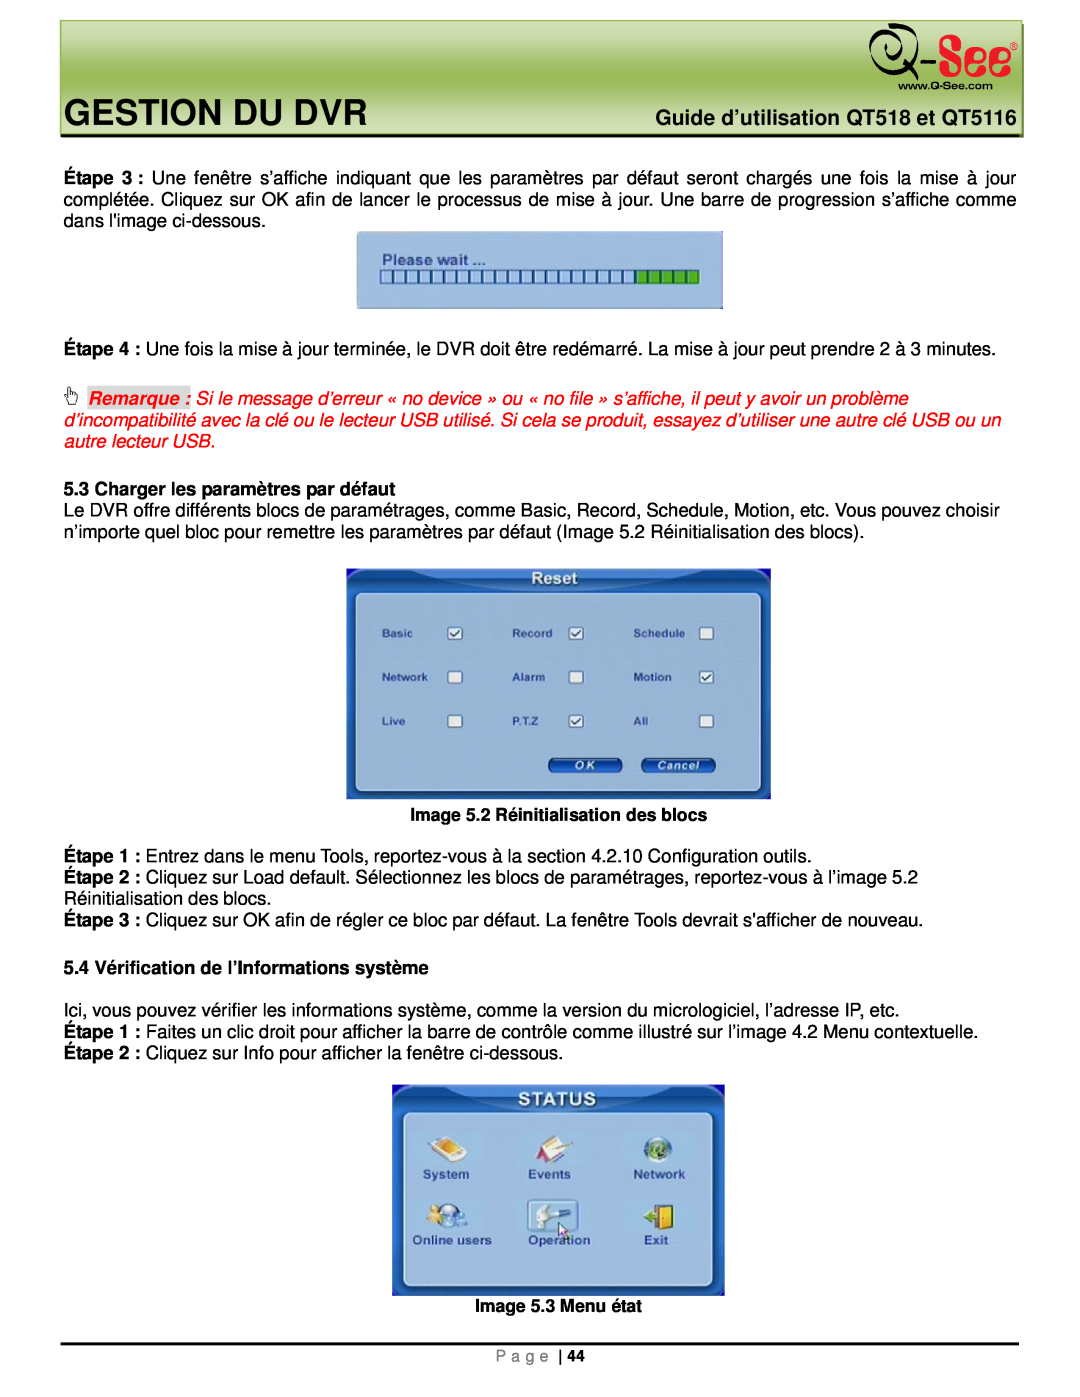 Q-See manual Gestion Du Dvr, Guide d’utilisation QT518 et QT5116, Charger les paramètres par défaut, Image 5.3 Menu état 